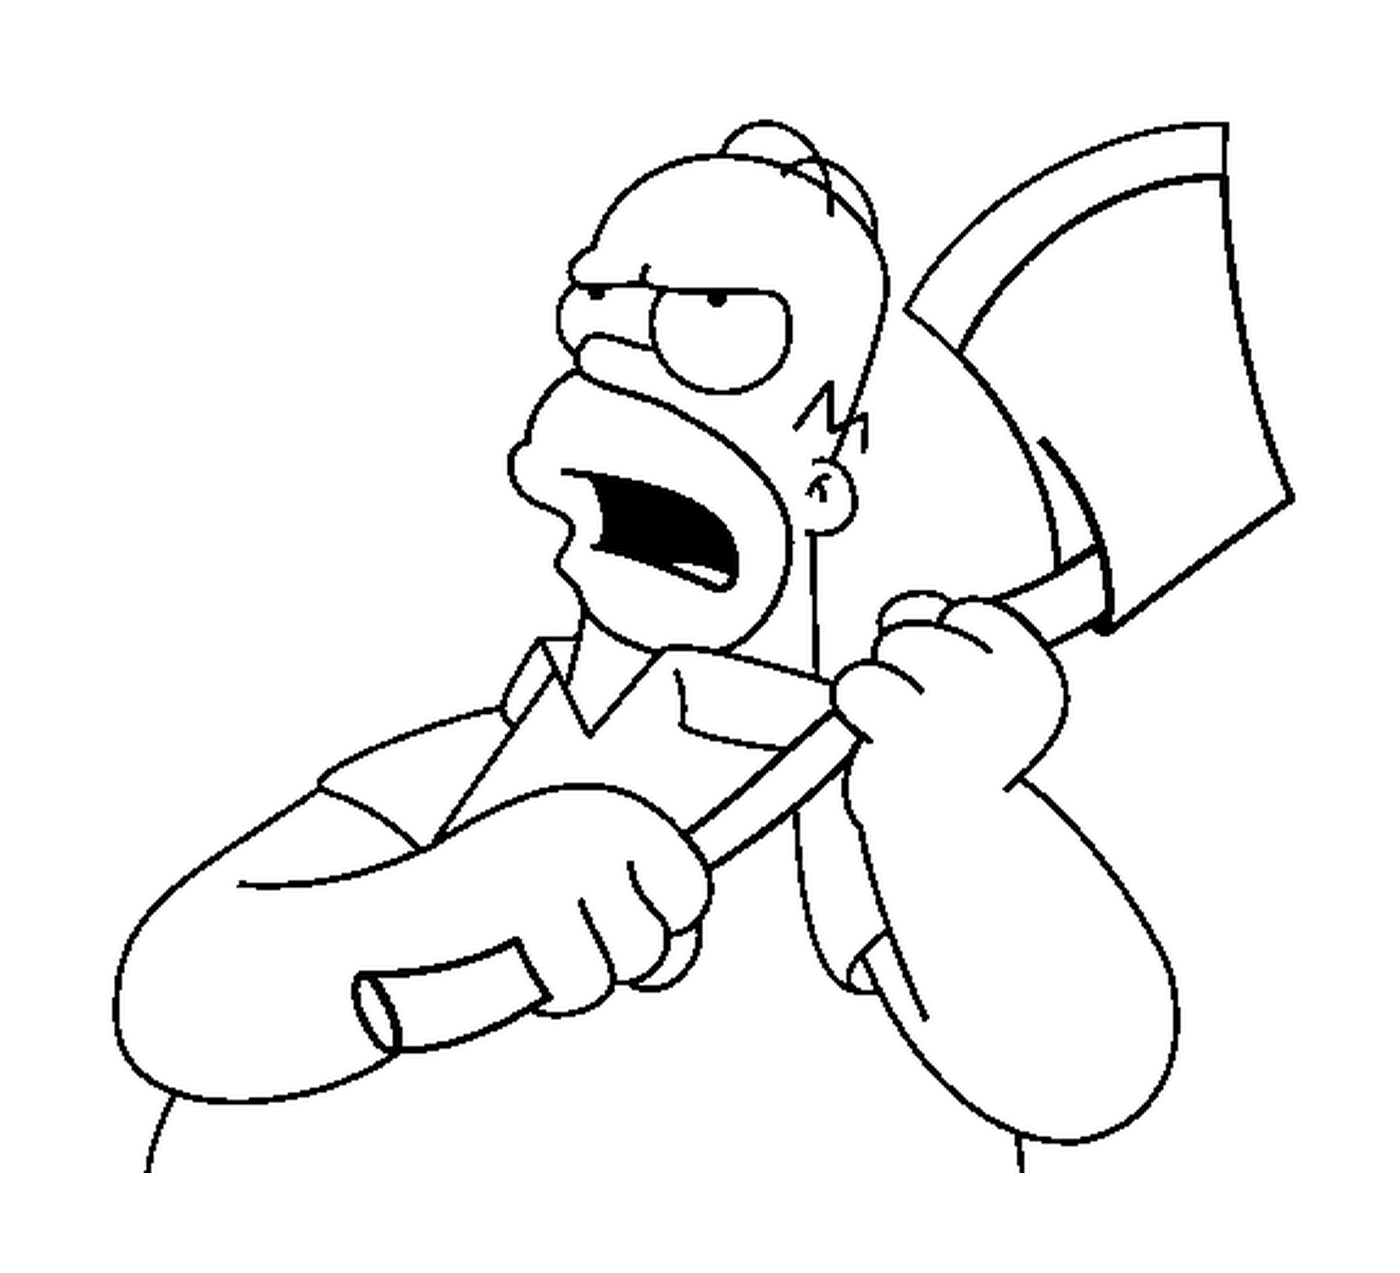  Homero con un hacha en la mano 